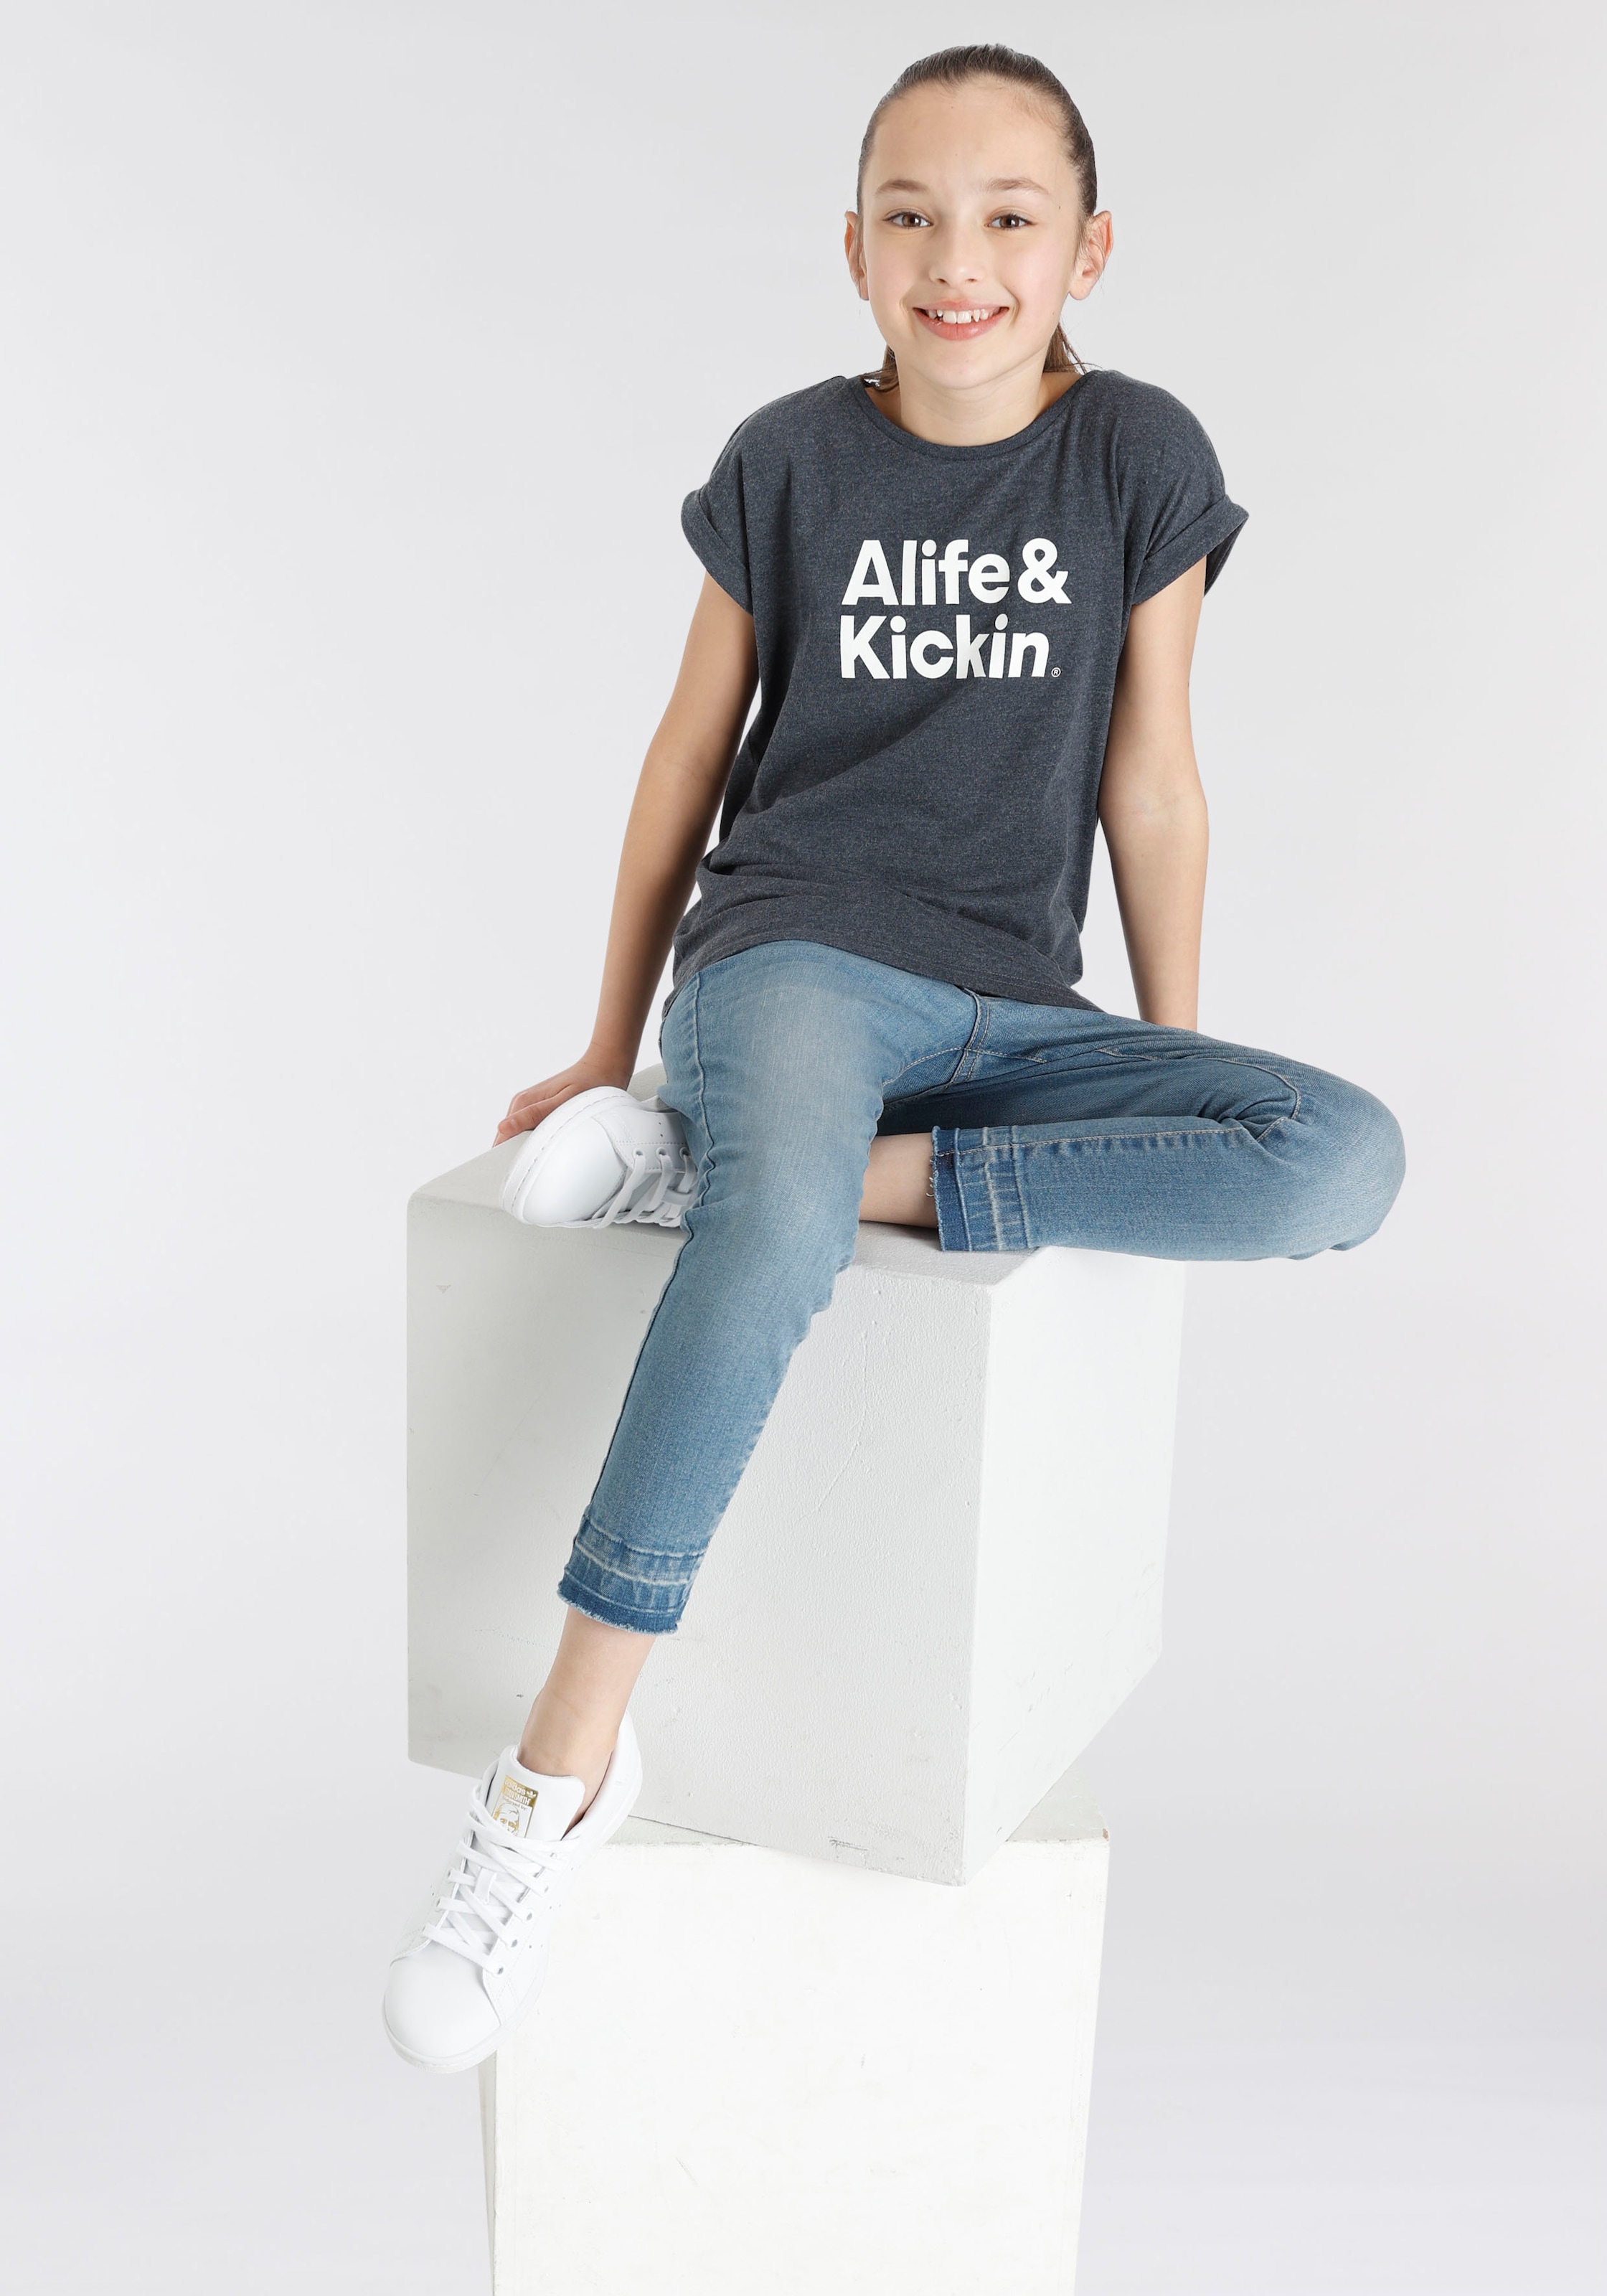 NEUE & | Kids. online Kickin BAUR T-Shirt Druck«, Alife für »mit Kickin bestellen & Logo MARKE! Alife